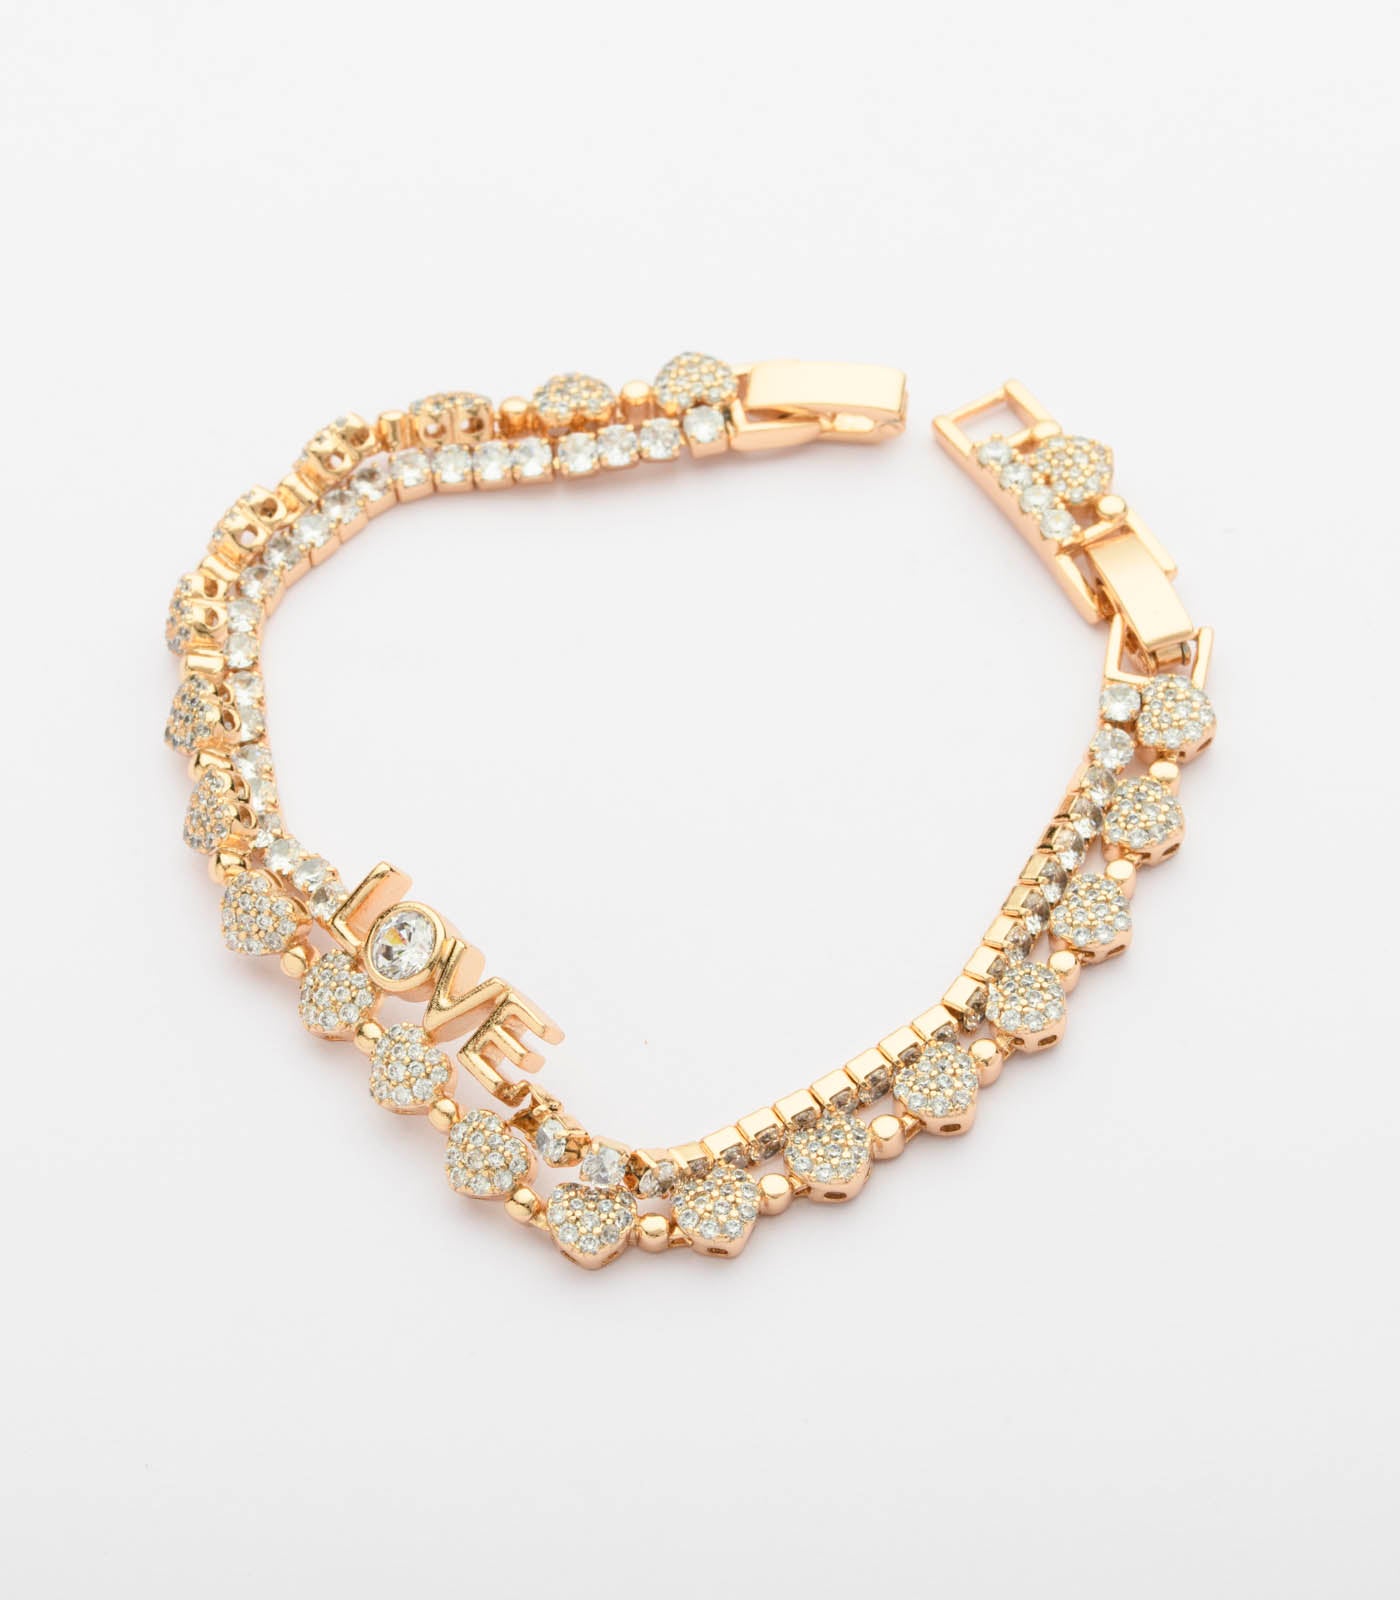 Decorative Love And Gold Hearts Bracelet (Brass)